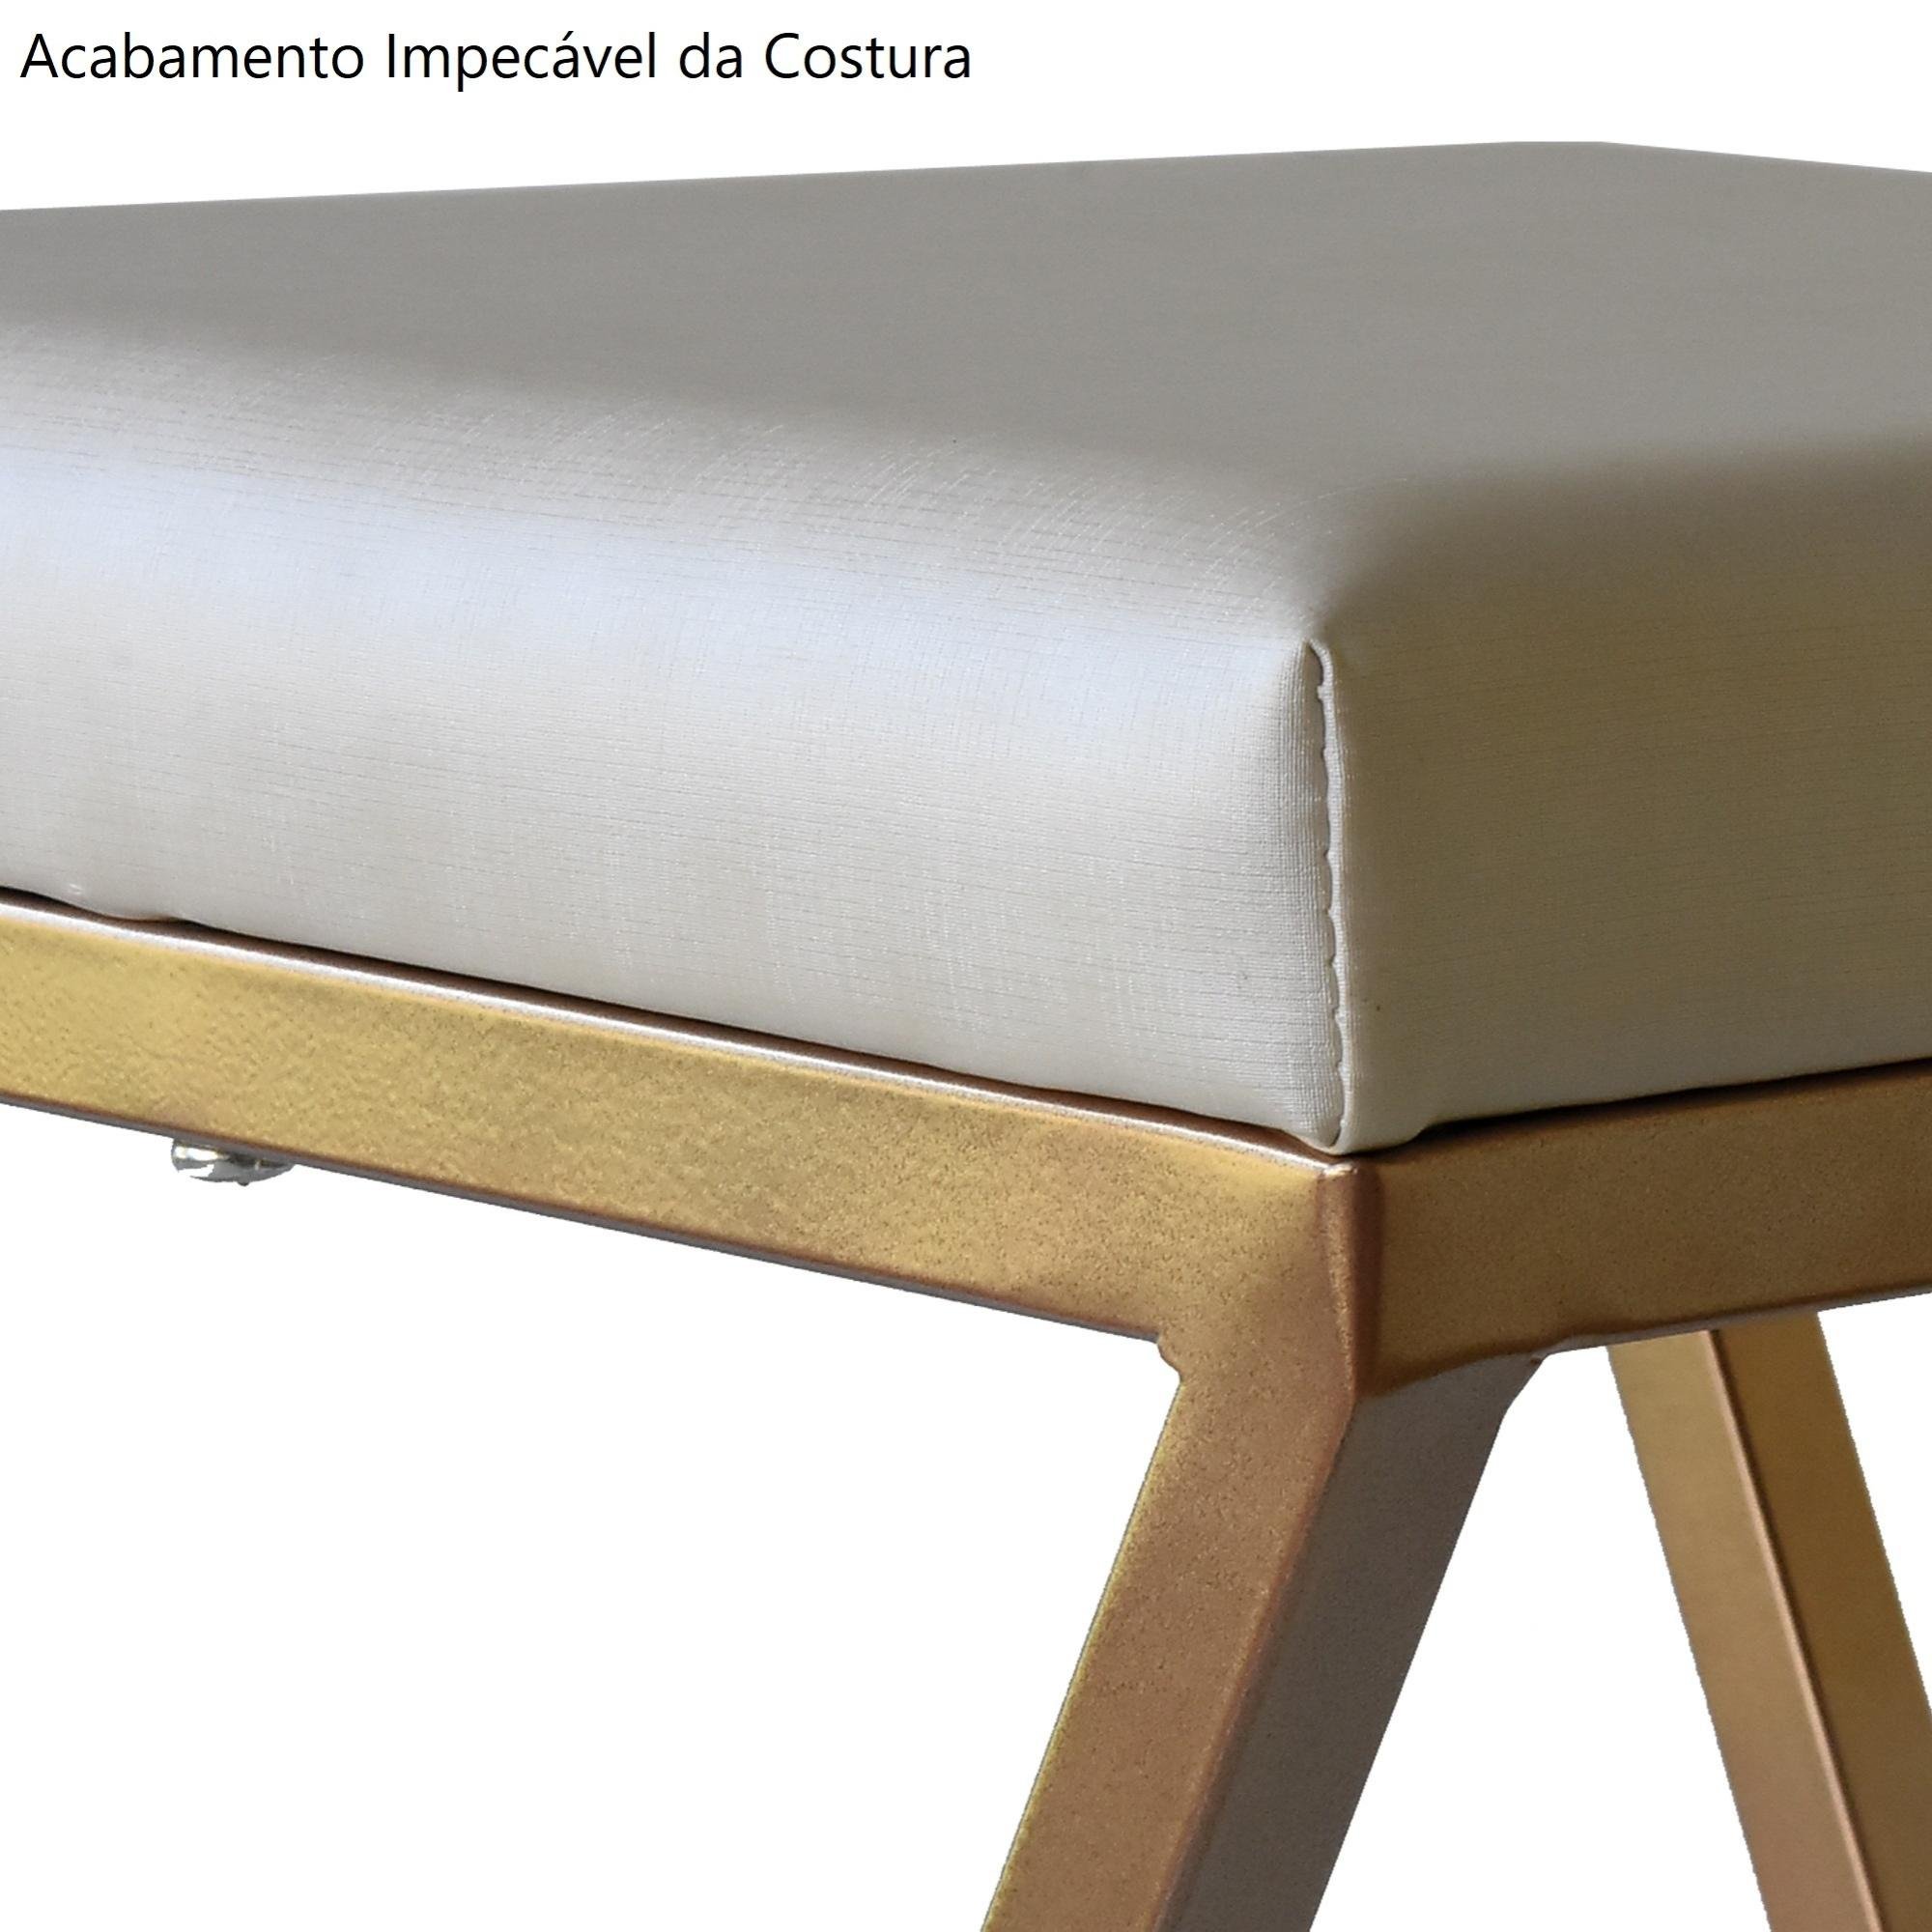 Cadeira Industrial Estofada e Metalon - Cobre 47 CM Casadecorlis - 5